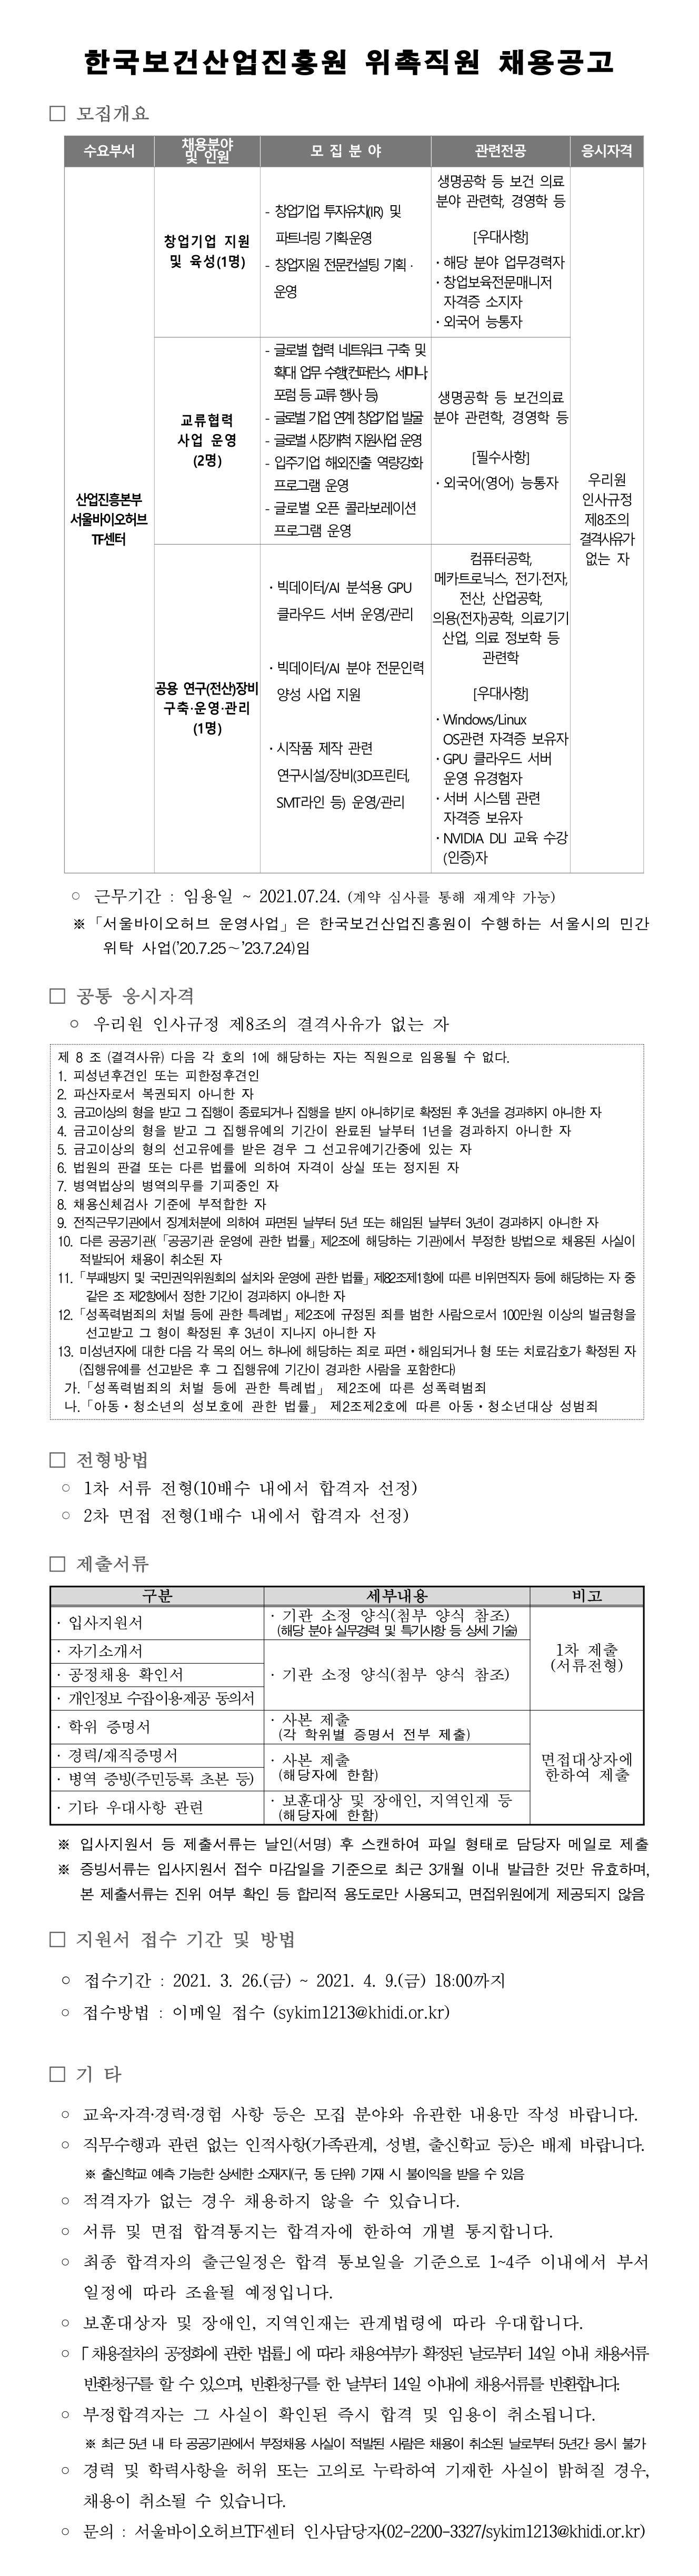 한국 보건산업 진흥원 위촉직원 채용공고, 내용 첨부파일 참조